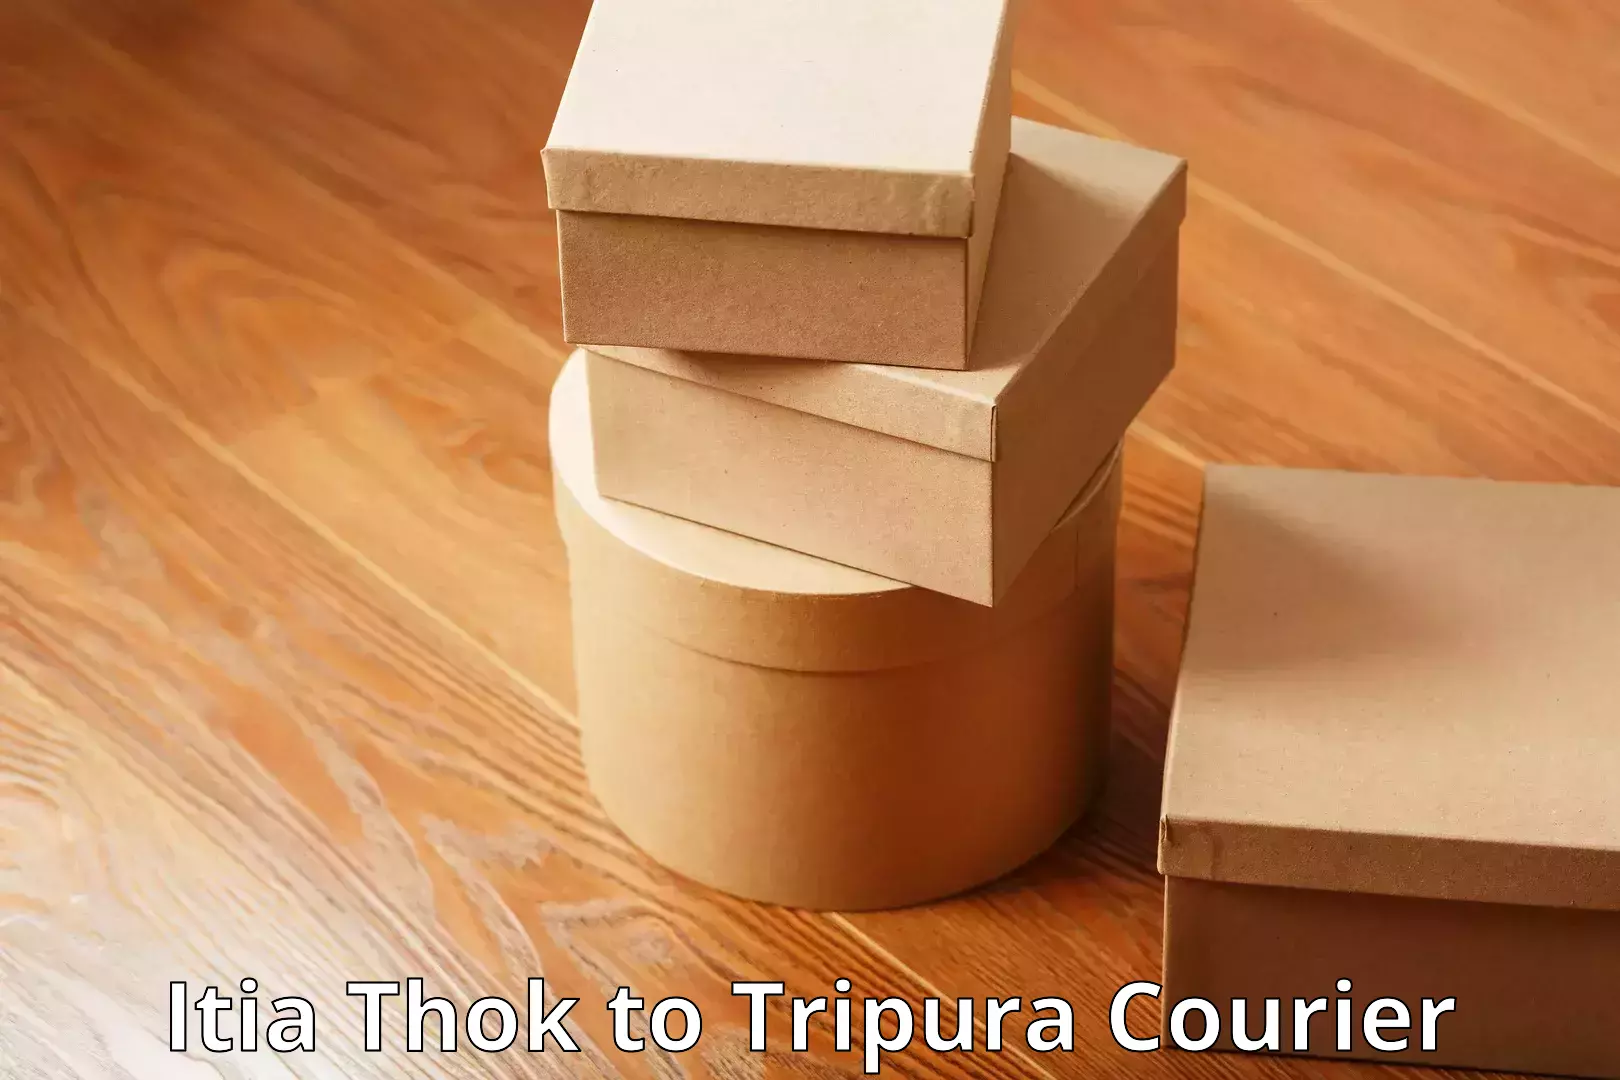 Flexible luggage courier service Itia Thok to Tripura